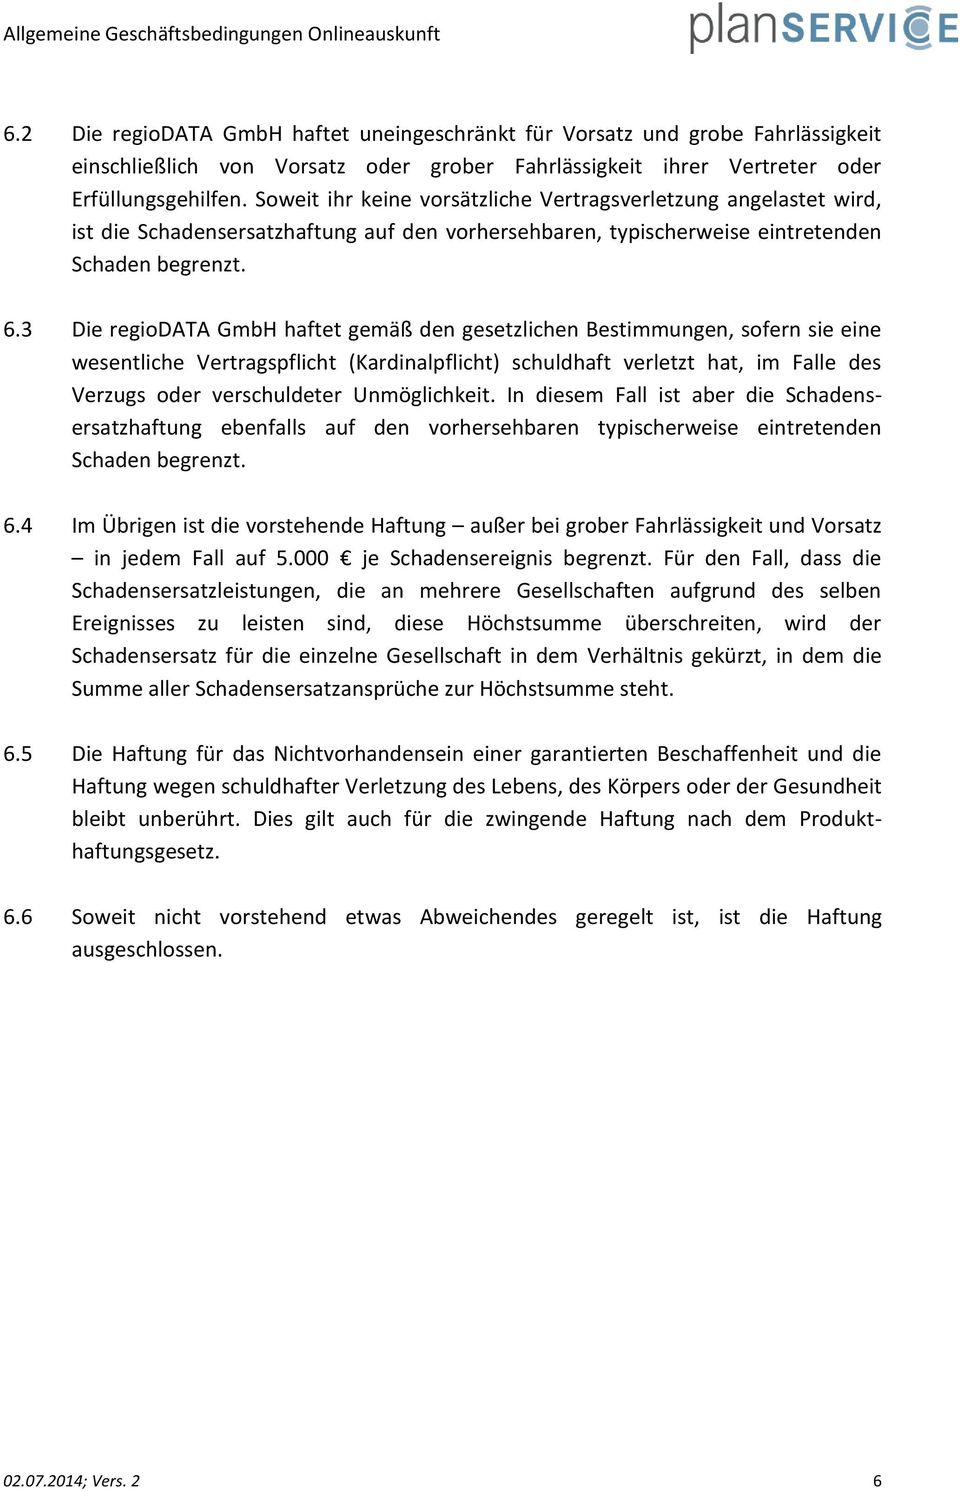 3 Die regiodata GmbH haftet gemäß den gesetzlichen Bestimmungen, sofern sie eine wesentliche Vertragspflicht (Kardinalpflicht) schuldhaft verletzt hat, im Falle des Verzugs oder verschuldeter